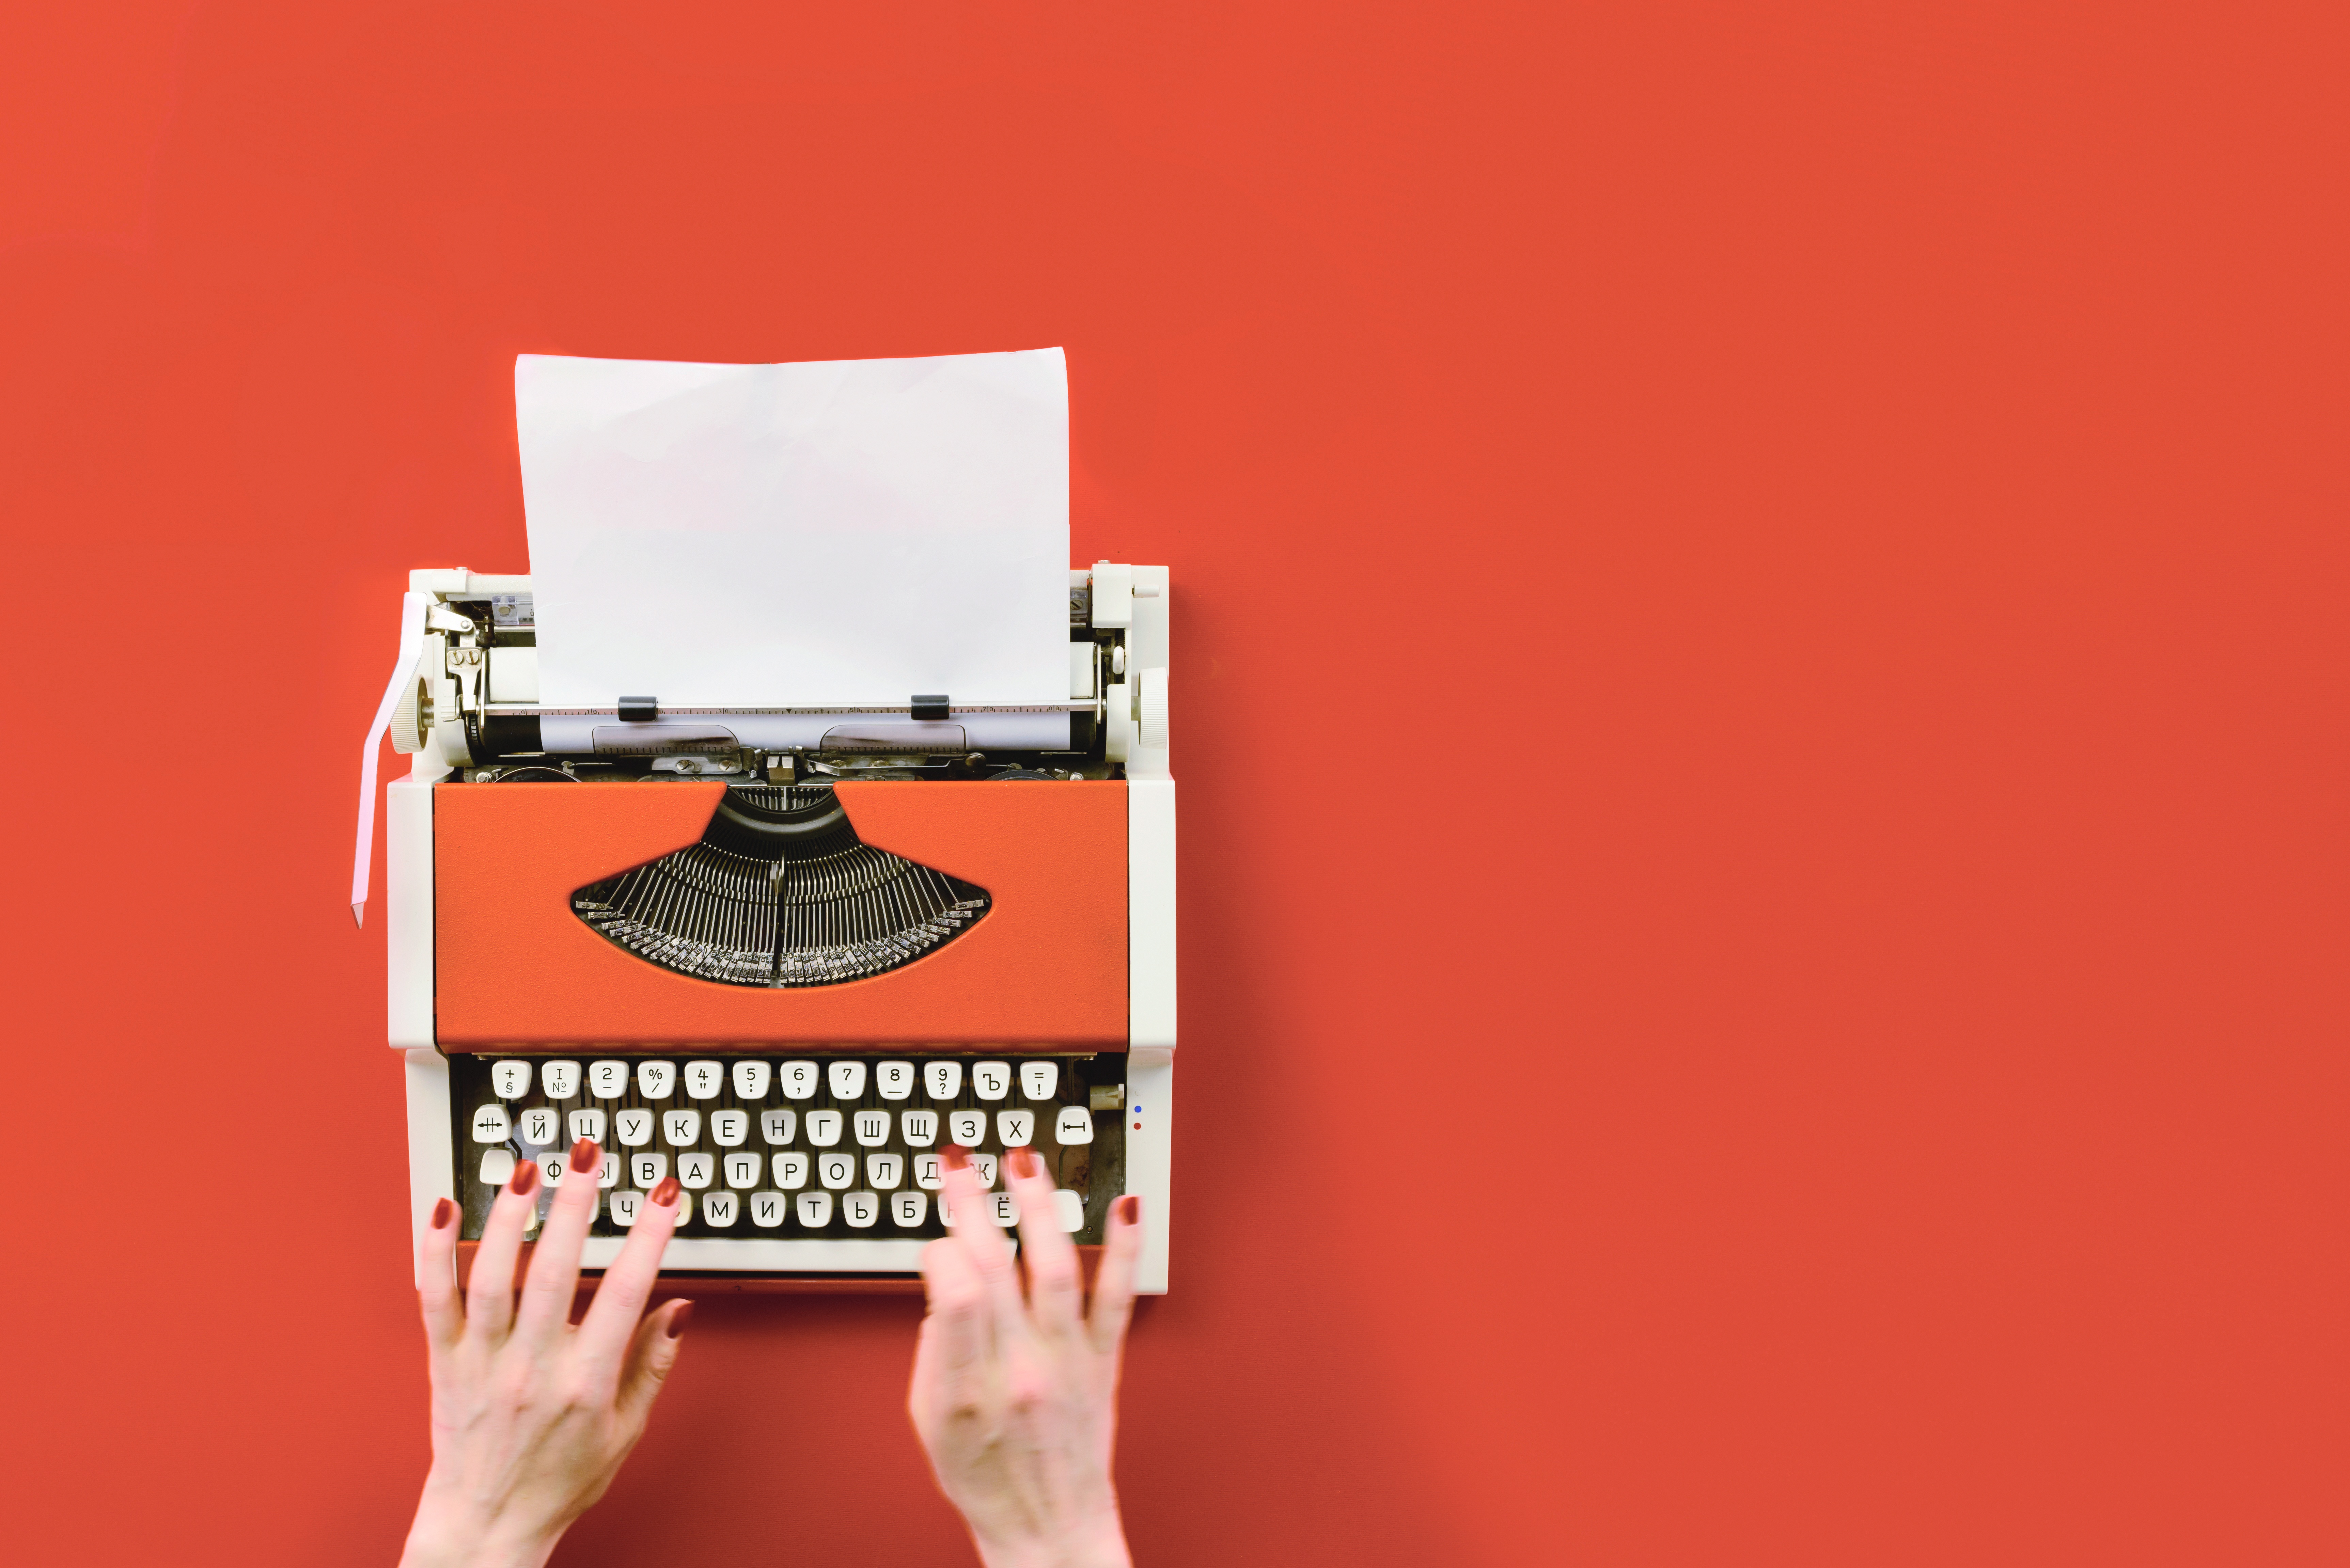 hands-typing-on-typewriter-orange-background